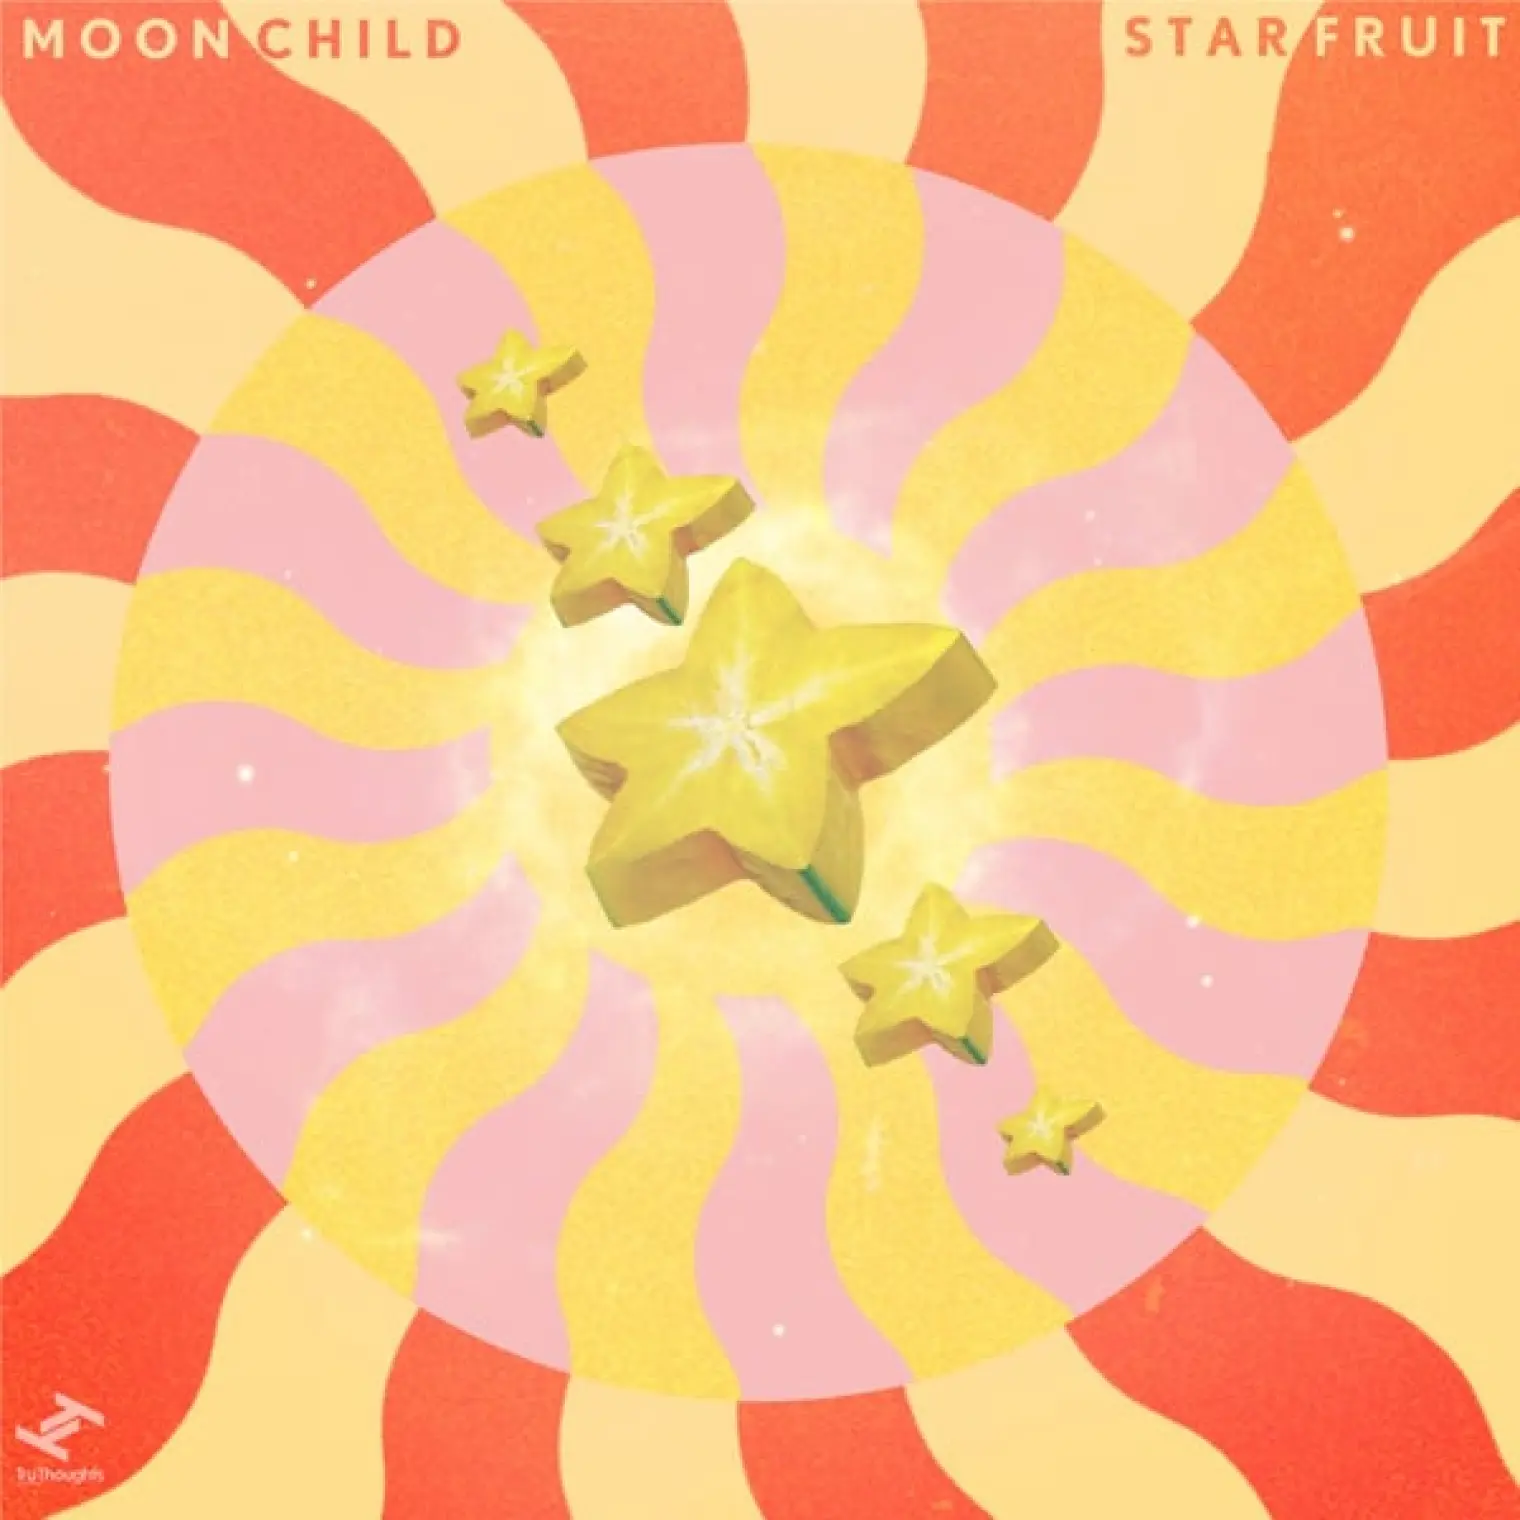 Starfruit -  moonchild 